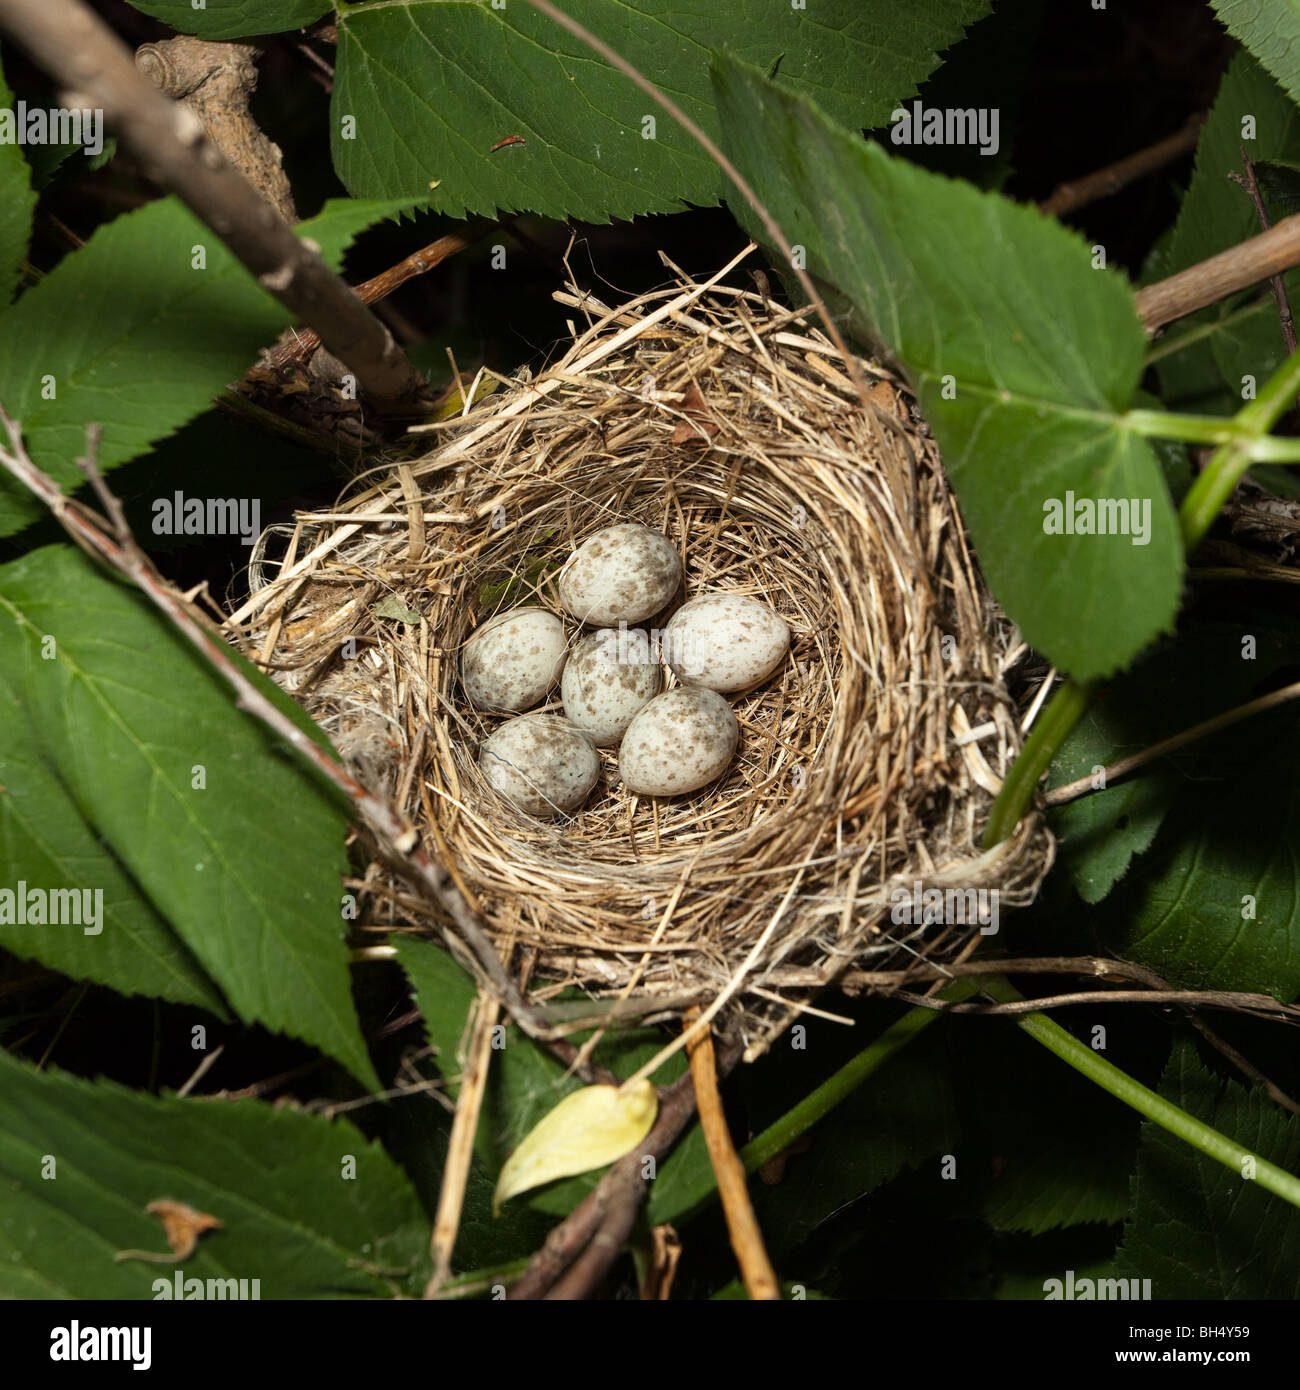 Le uova in un nido. Non ci sono uccelli dove ferito nella realizzazione di questa immagine. Mamma uccello non abbandona il suo nido. Nido di uccello. Foto Stock